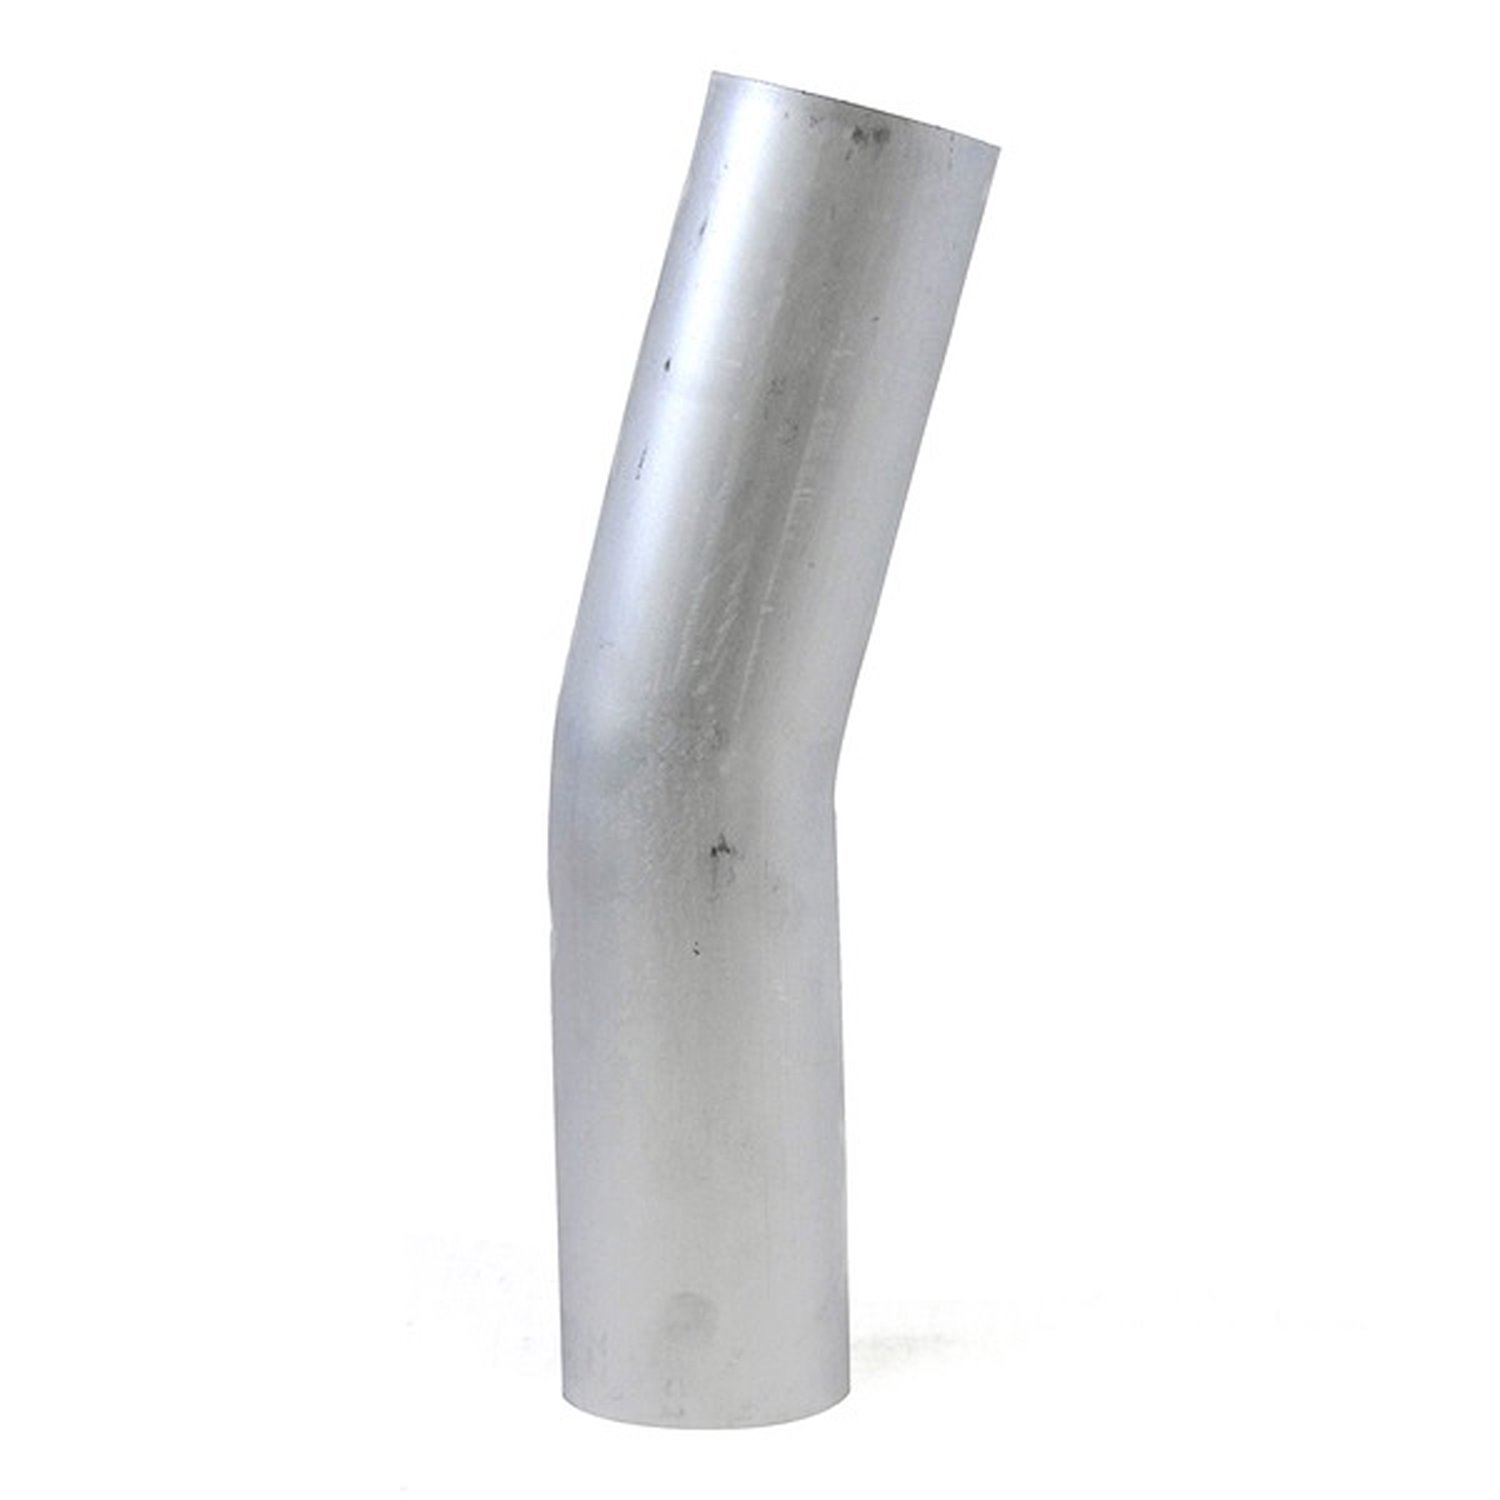 AT15-275-CLR-275 Aluminum Elbow Tube, 6061 Aluminum, 15-Degree Bend Elbow Tubing, 2-3/4 in. OD, Tight Radius, 2-3/4 in. CLR